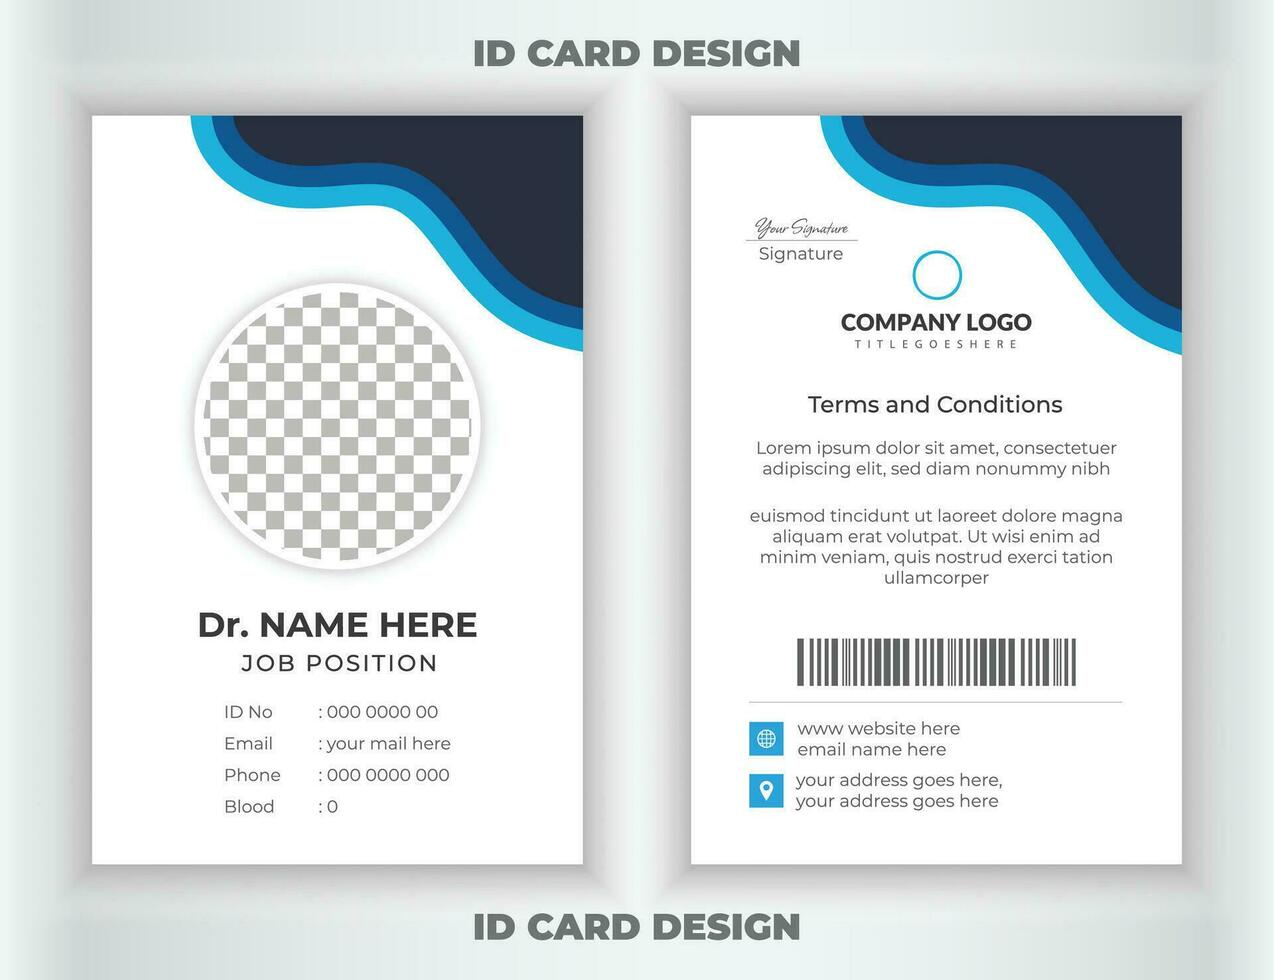 médico estilo carné de identidad tarjeta diseño o moderno médico carné de identidad tarjeta modelo. carné de identidad insignia. vector